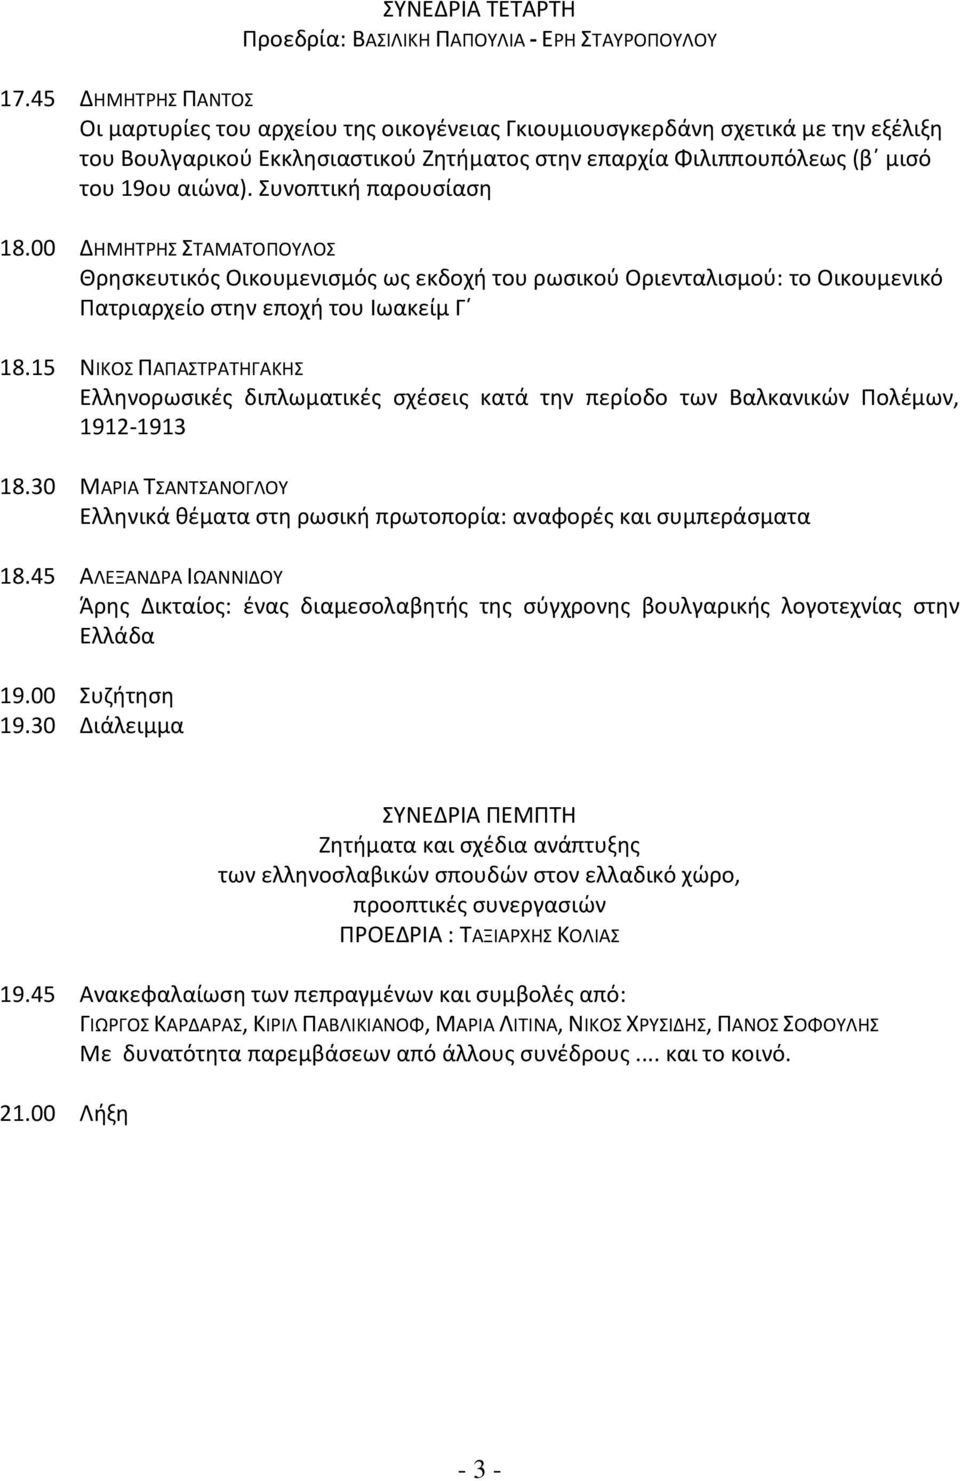 Συνοπτική παρουσίαση 18.00 ΔΗΜΗΤΡΗΣ ΣΤΑΜΑΤΟΠΟΥΛΟΣ Θρησκευτικός Οικουμενισμός ως εκδοχή του ρωσικού Οριενταλισμού: το Οικουμενικό Πατριαρχείο στην εποχή του Ιωακείμ Γ 18.